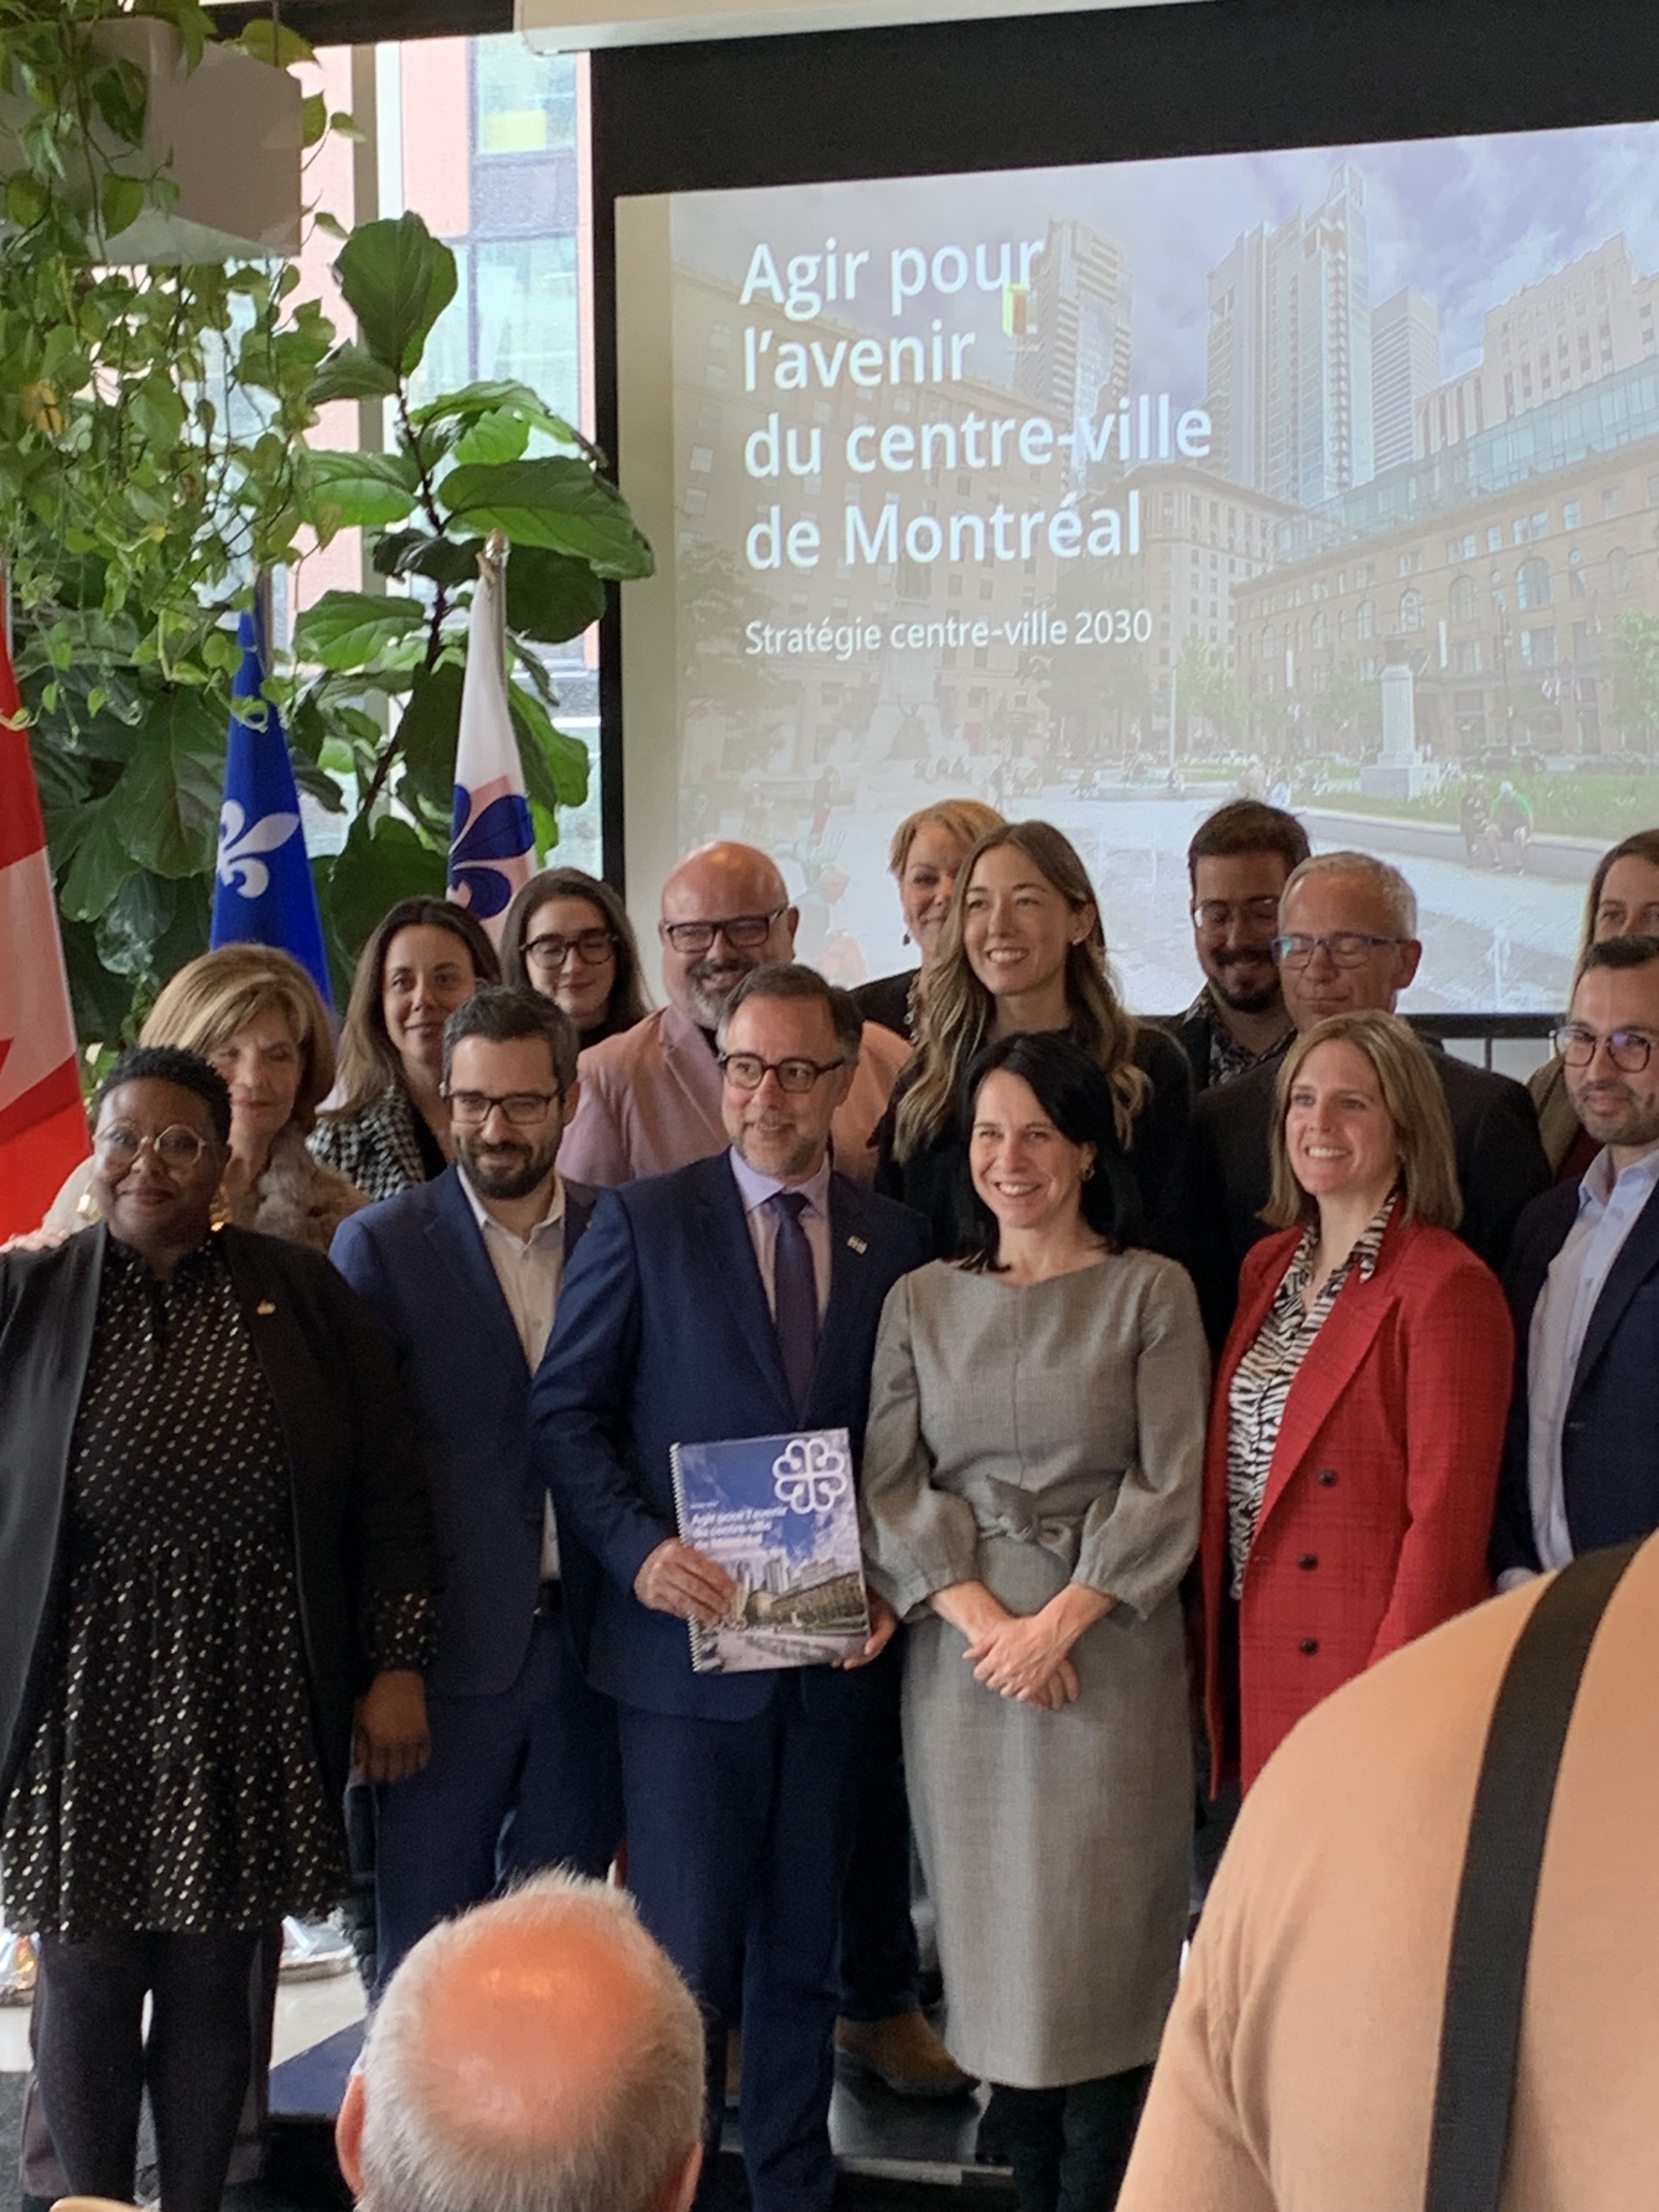 Montréal unveils its vision for long-term downtown development - Agir pour l'avenir du centre-ville de la métropole 